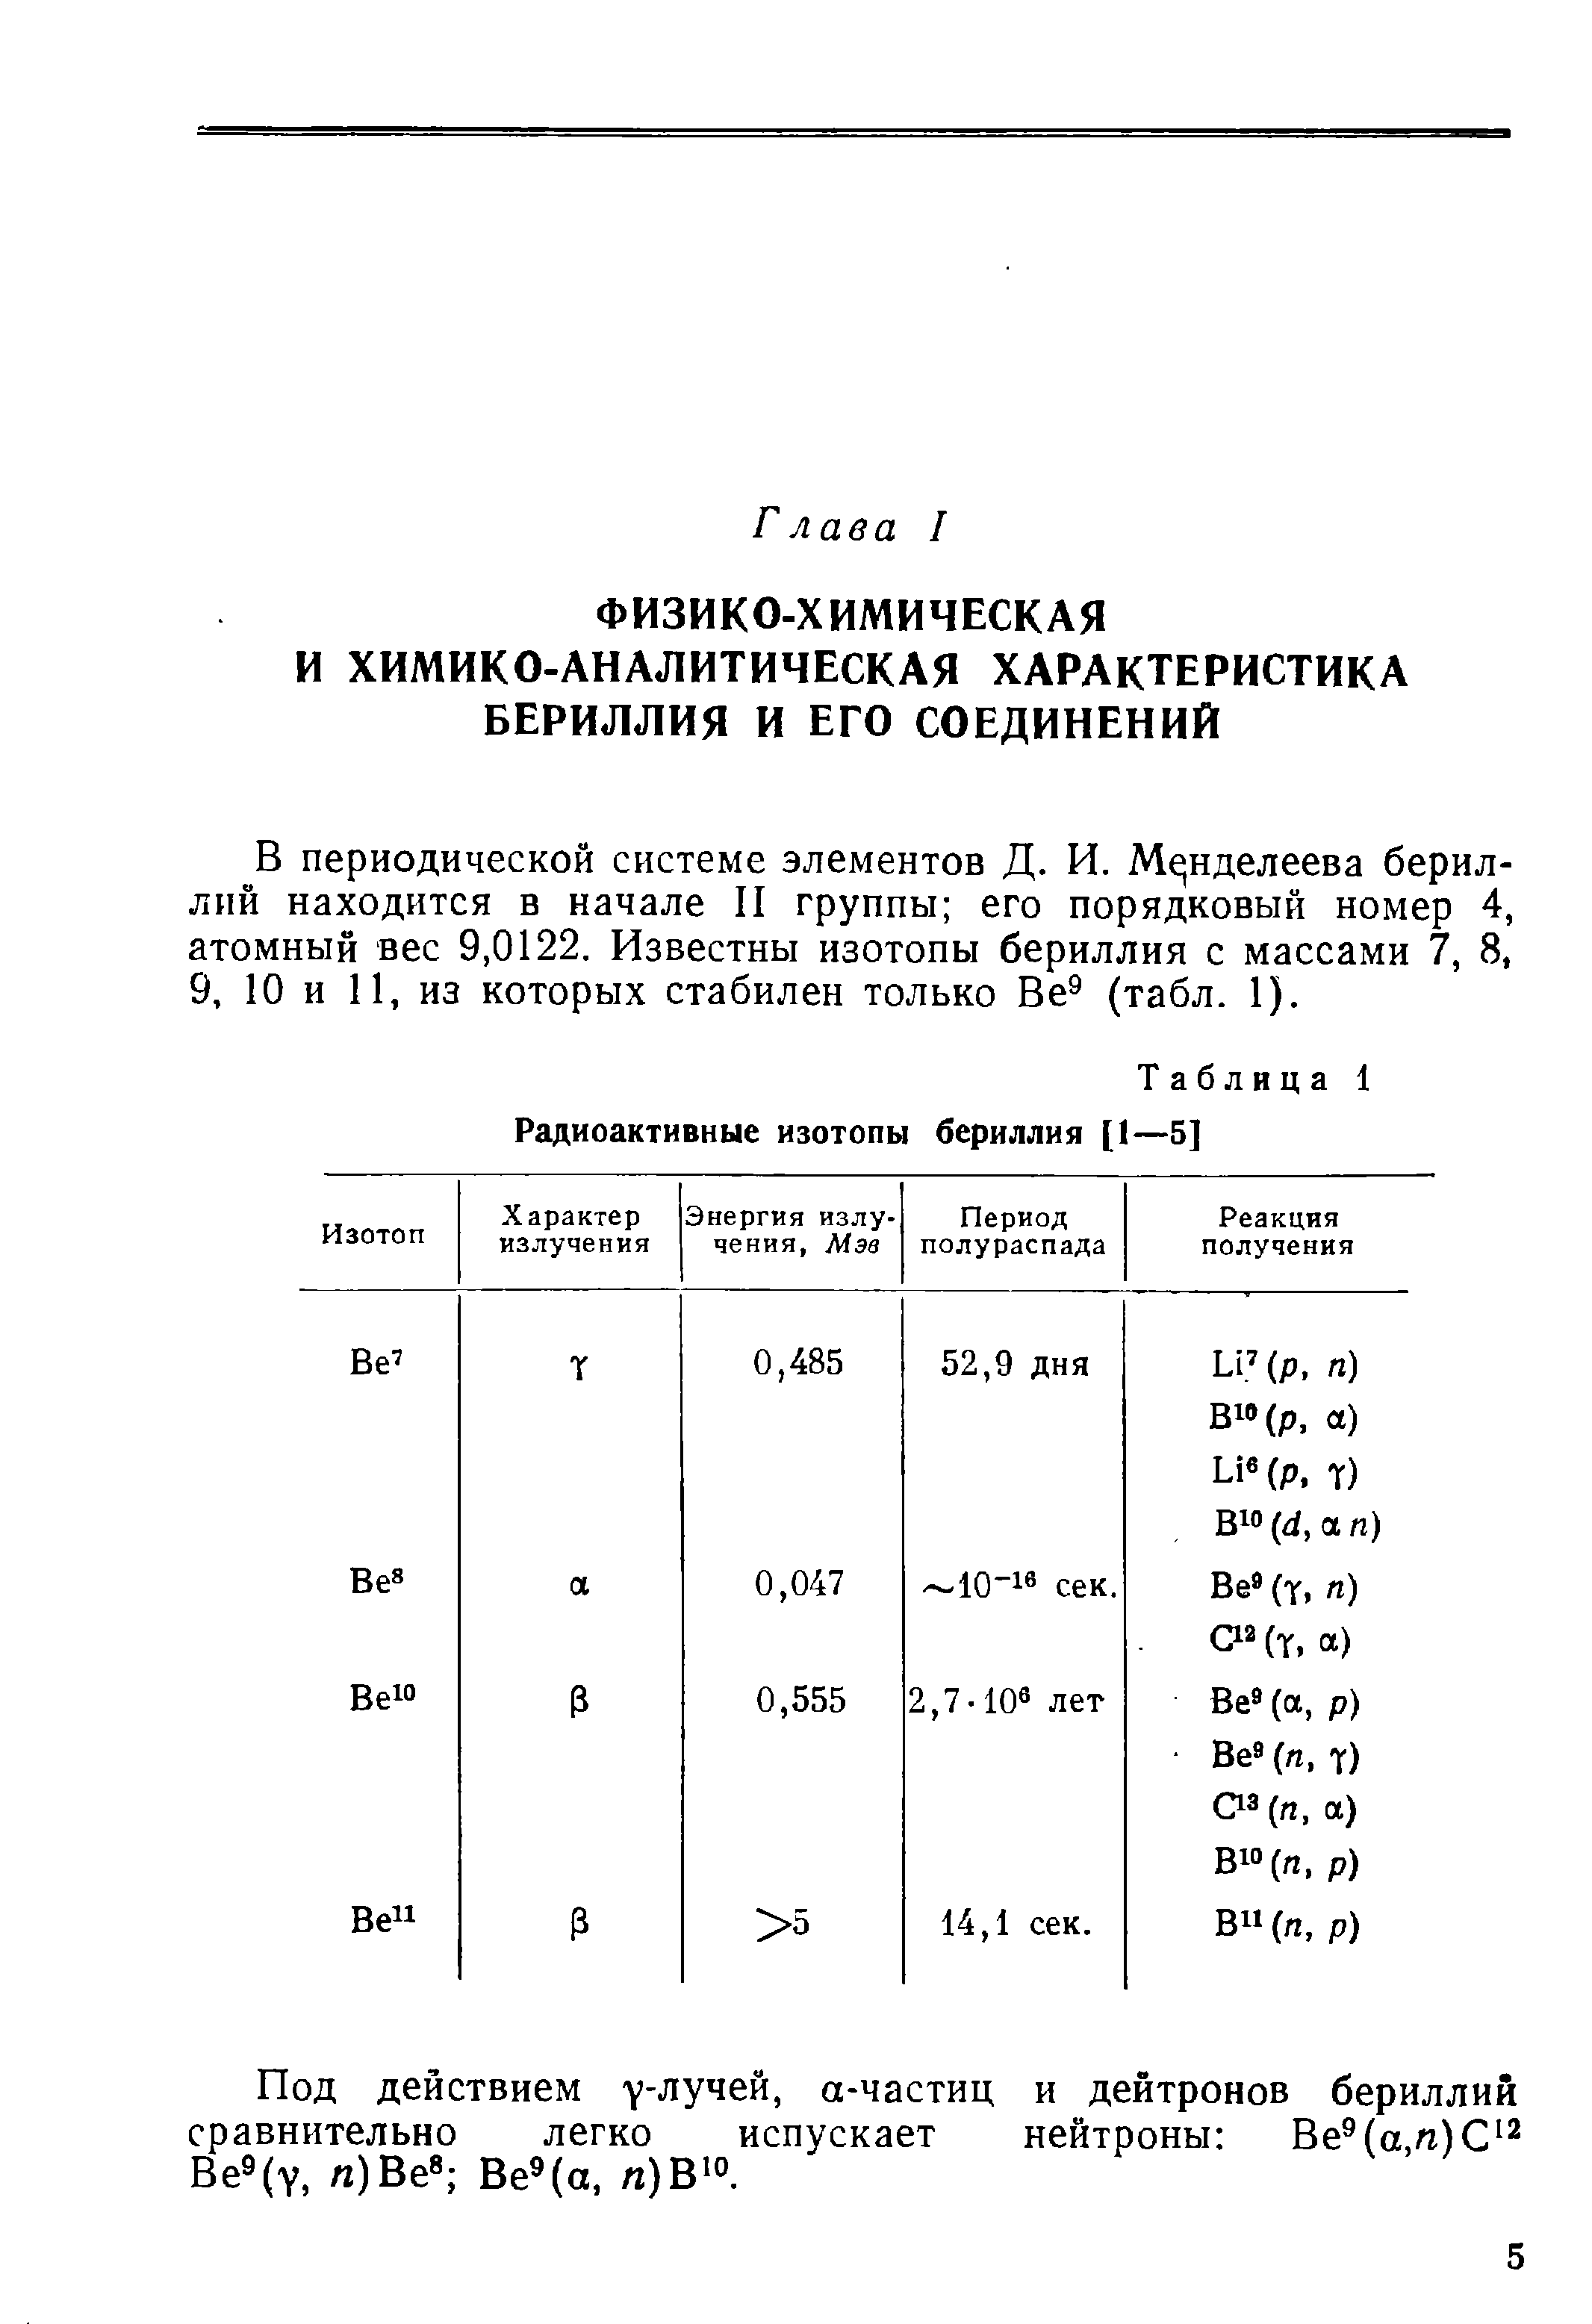 В периодической системе элементов Д. И, Менделеева бериллий находится в начале II группы его порядковый номер 4, атомный вес 9,0122. Известны изотопы бериллия с массами 7, 8, 9, 10 и 11, из которых стабилен только Ве (табл. 1).